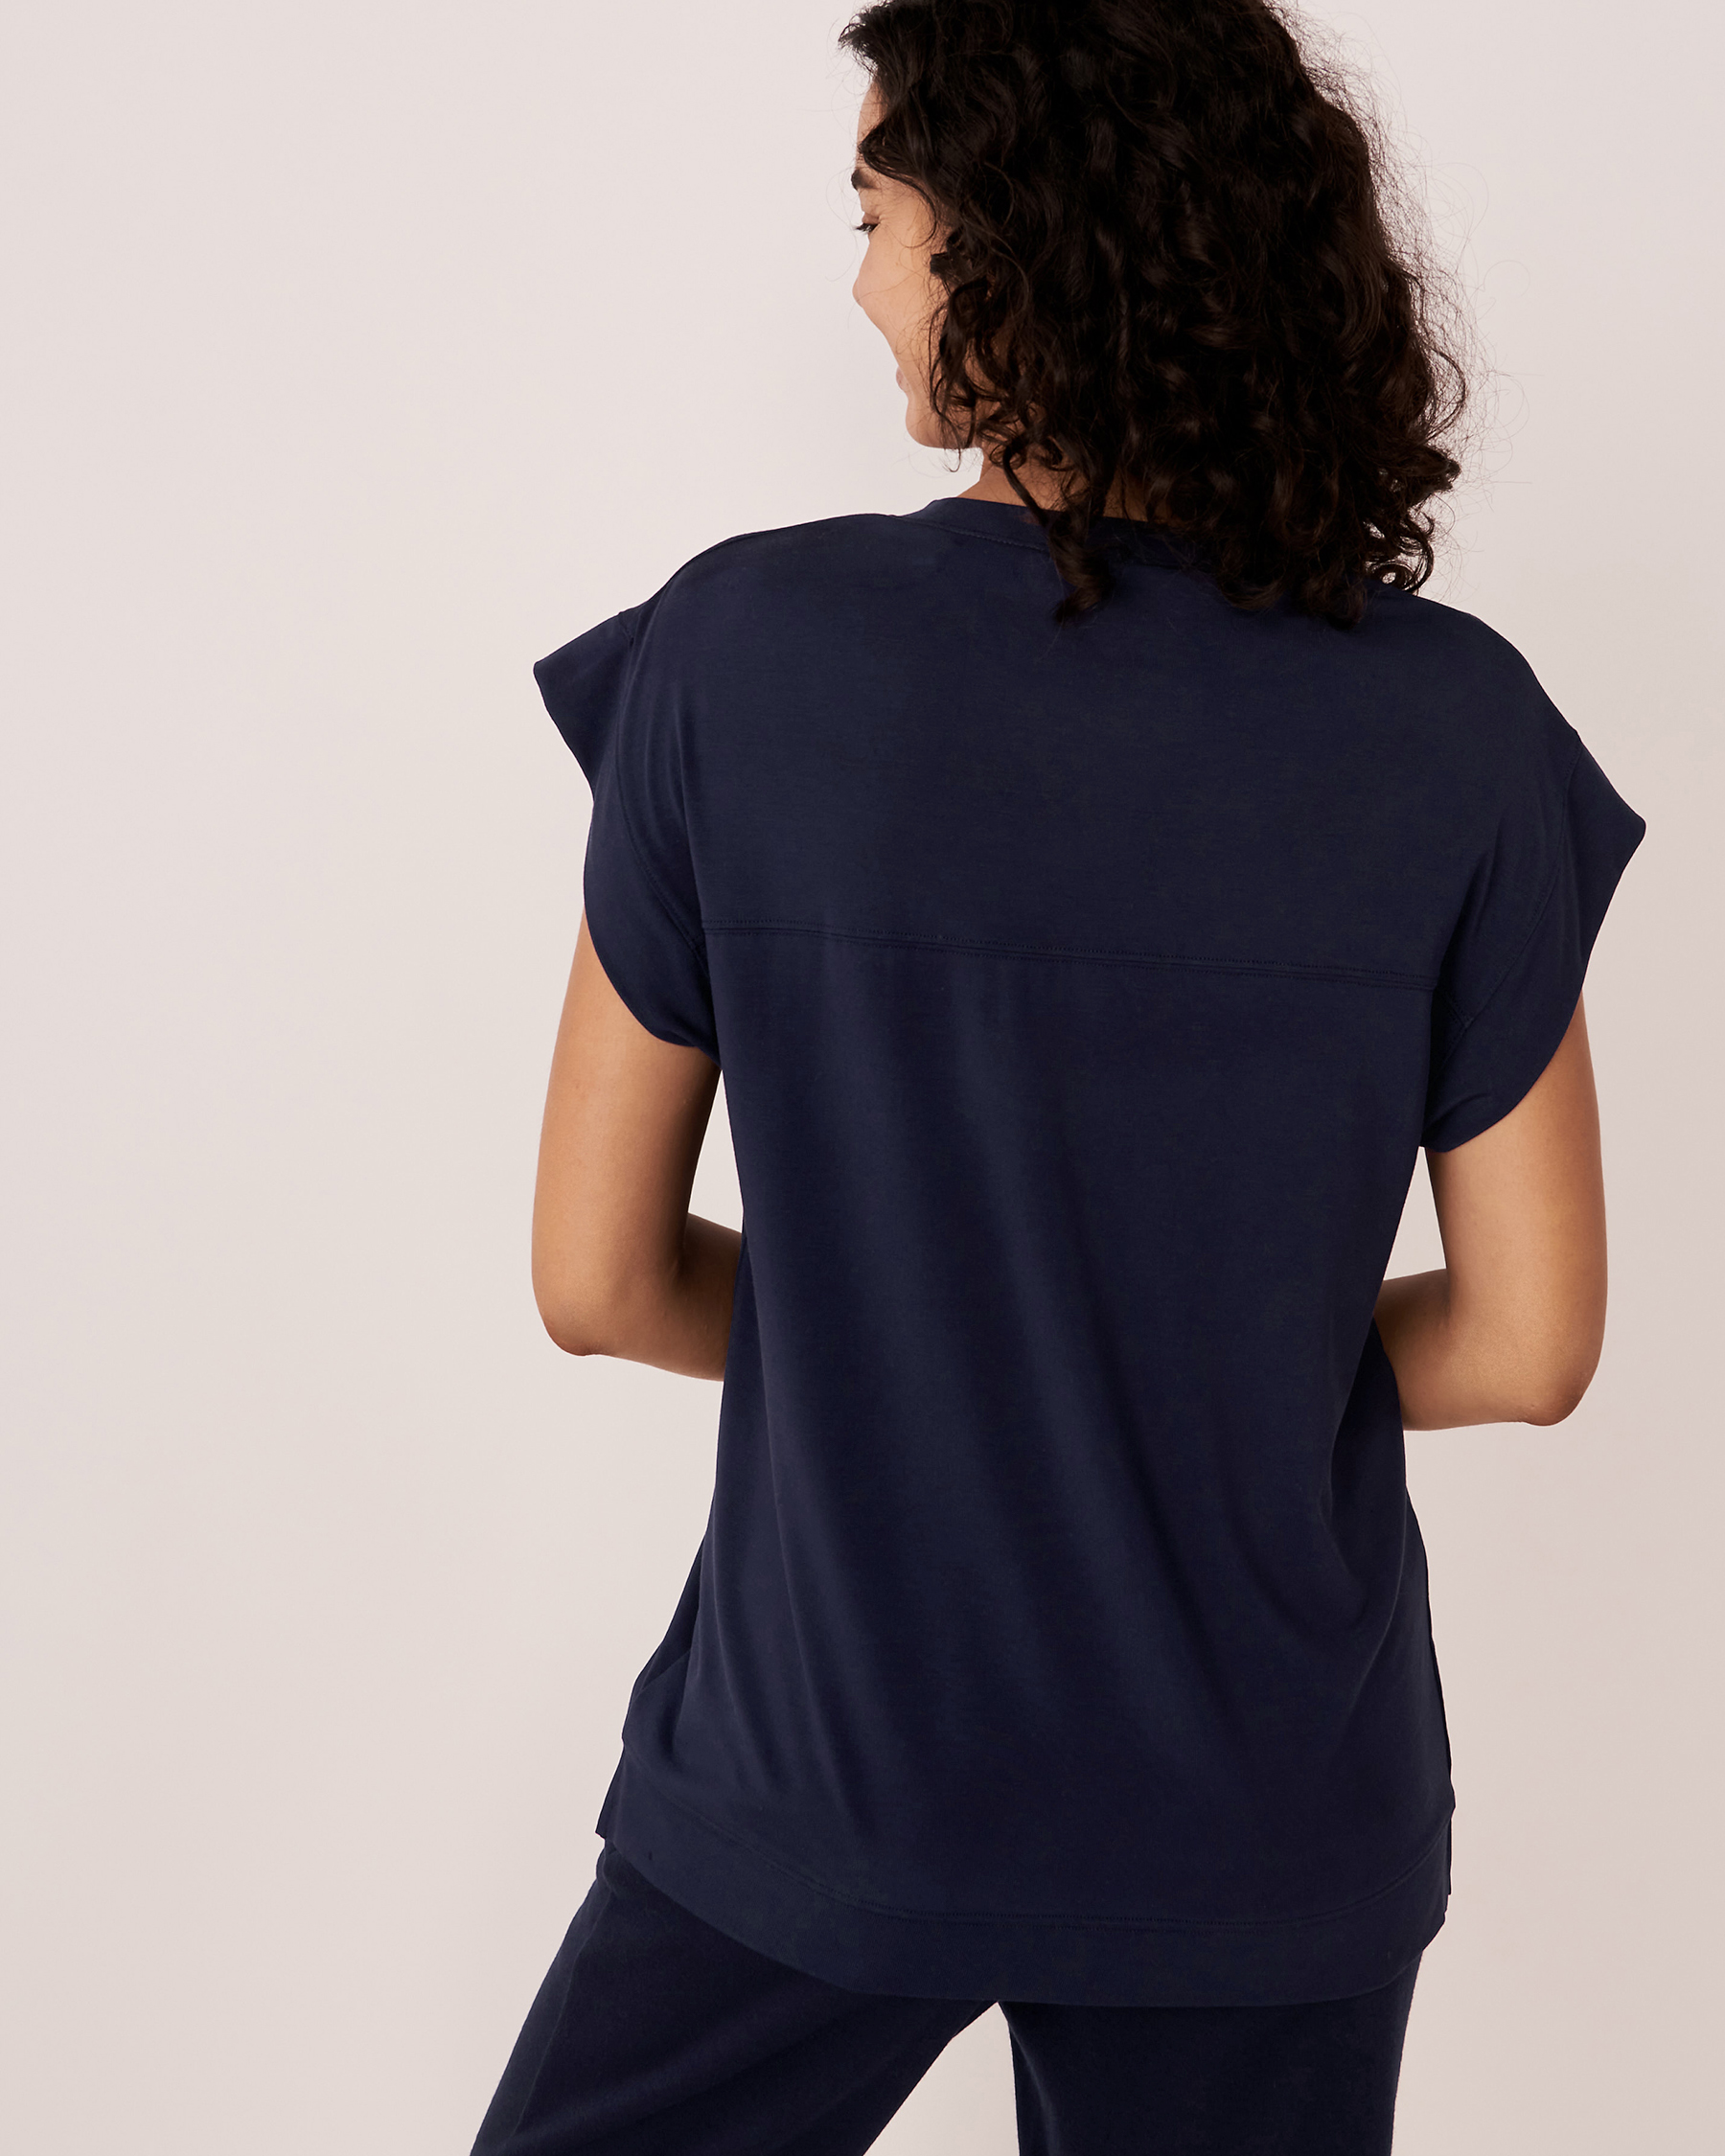 LA VIE EN ROSE Modal T-shirt Maritime blue 50100052 - View2